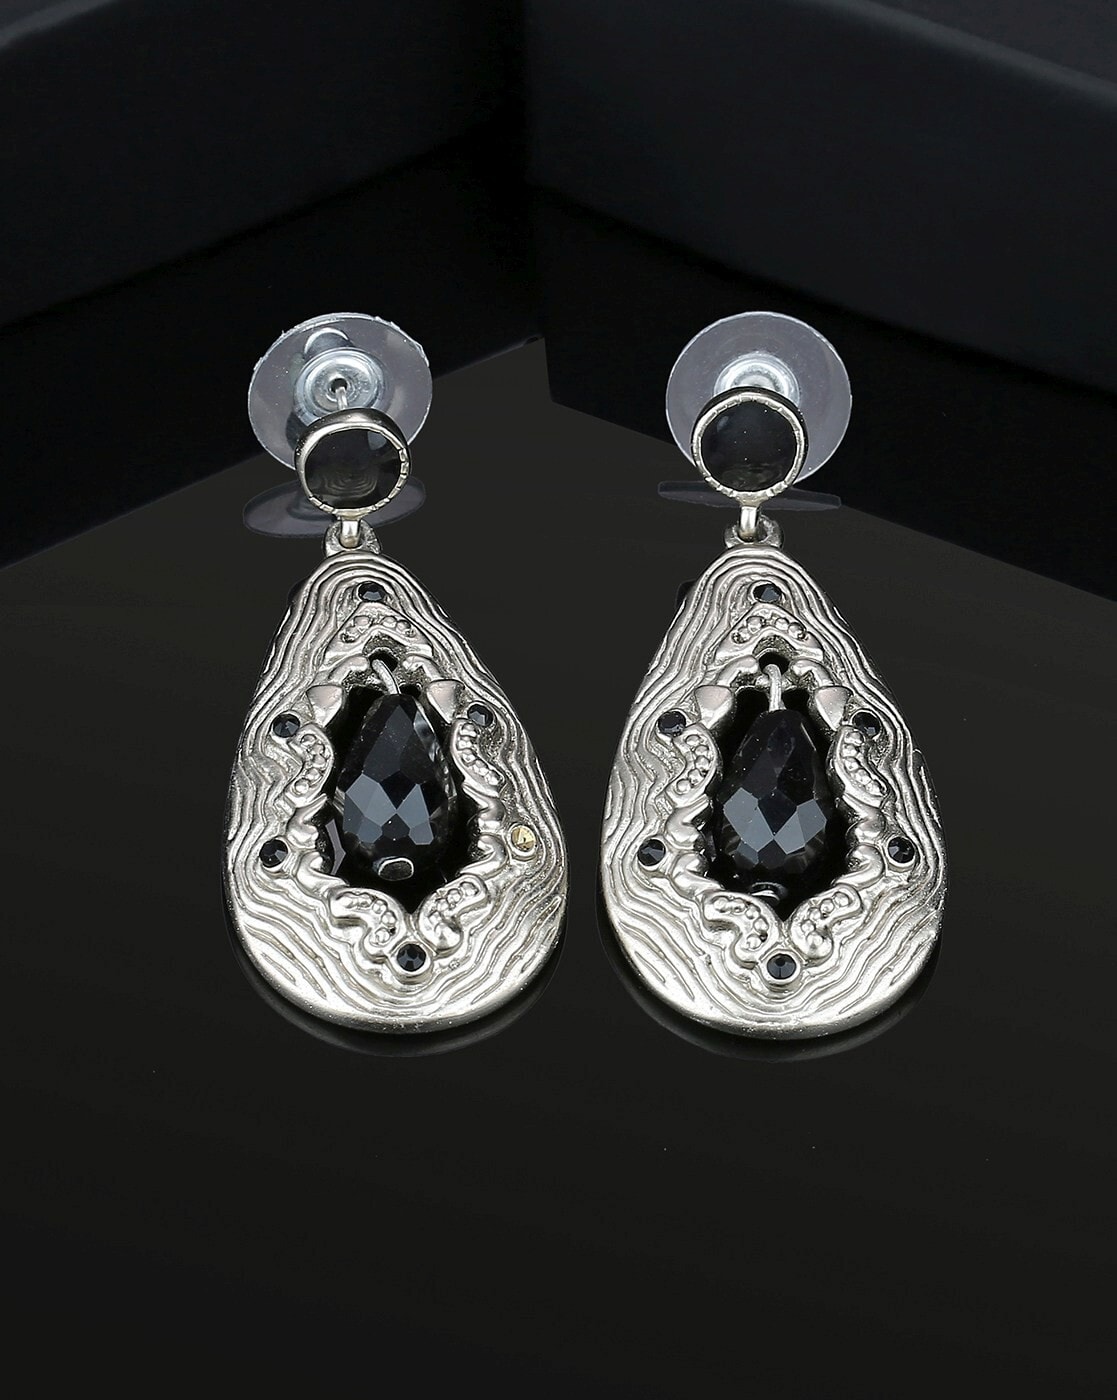 Buy Black Filigree Silver Earrings Online at Jayporecom